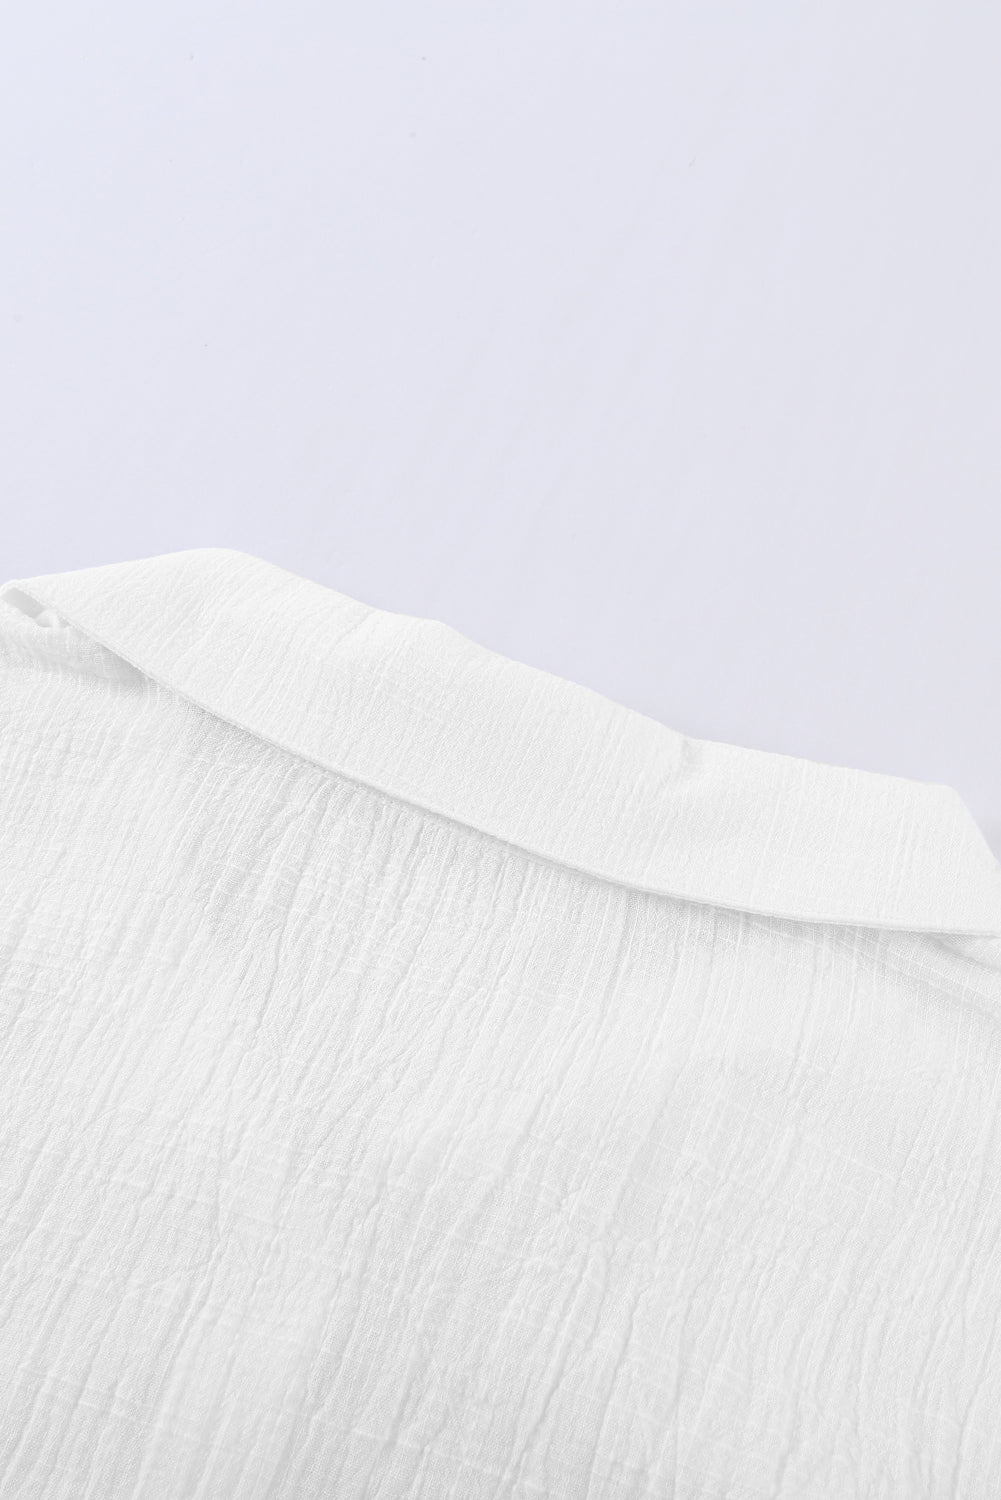 Jednobojna osnovna bijela košulja s teksturom